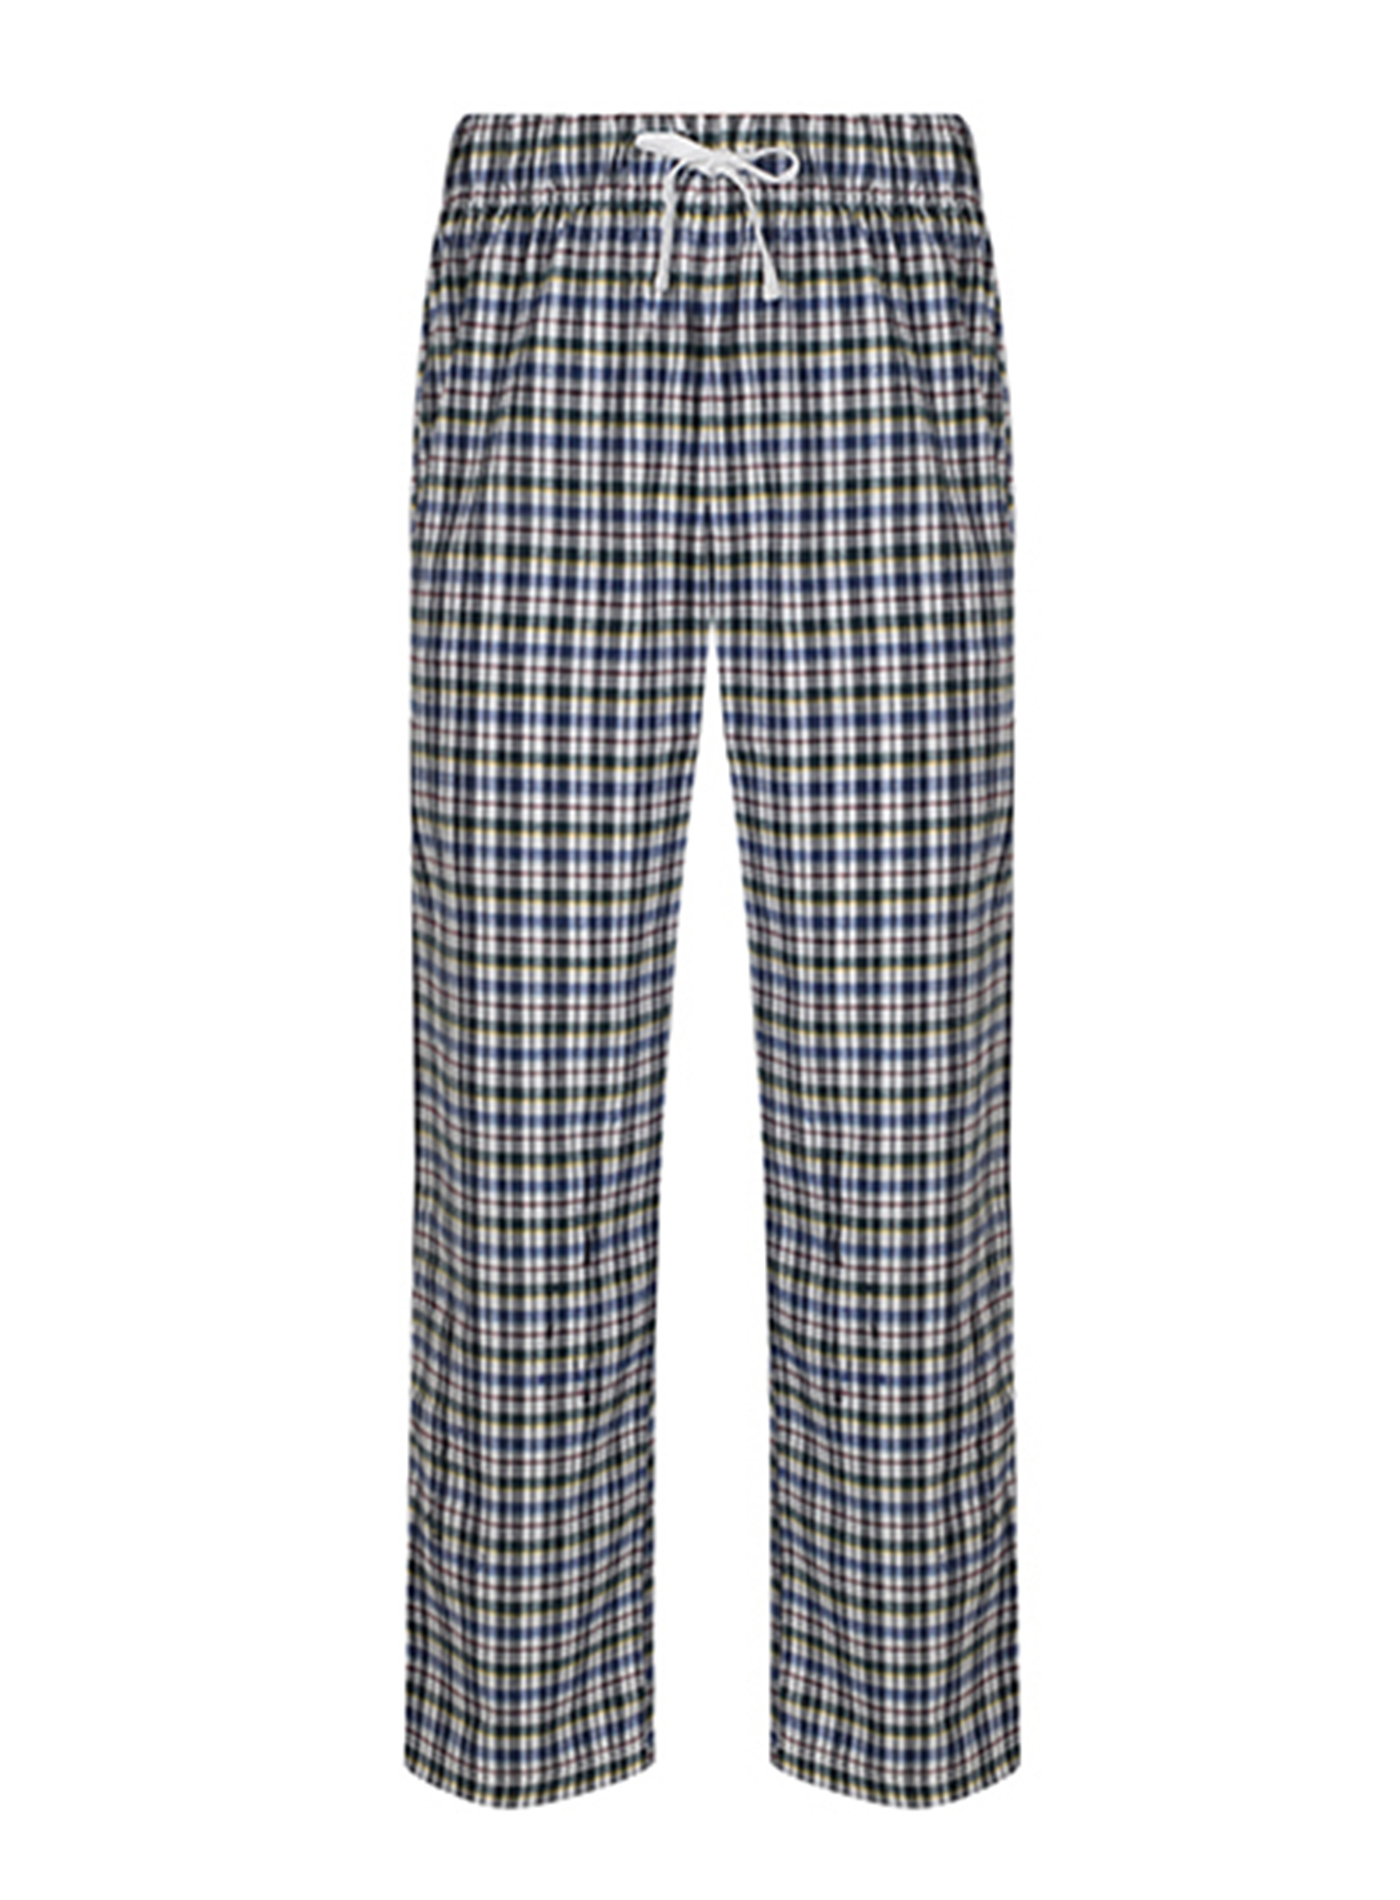 Pánské kalhoty na spaní Skinnifit Tartan - Modrá a béžová L